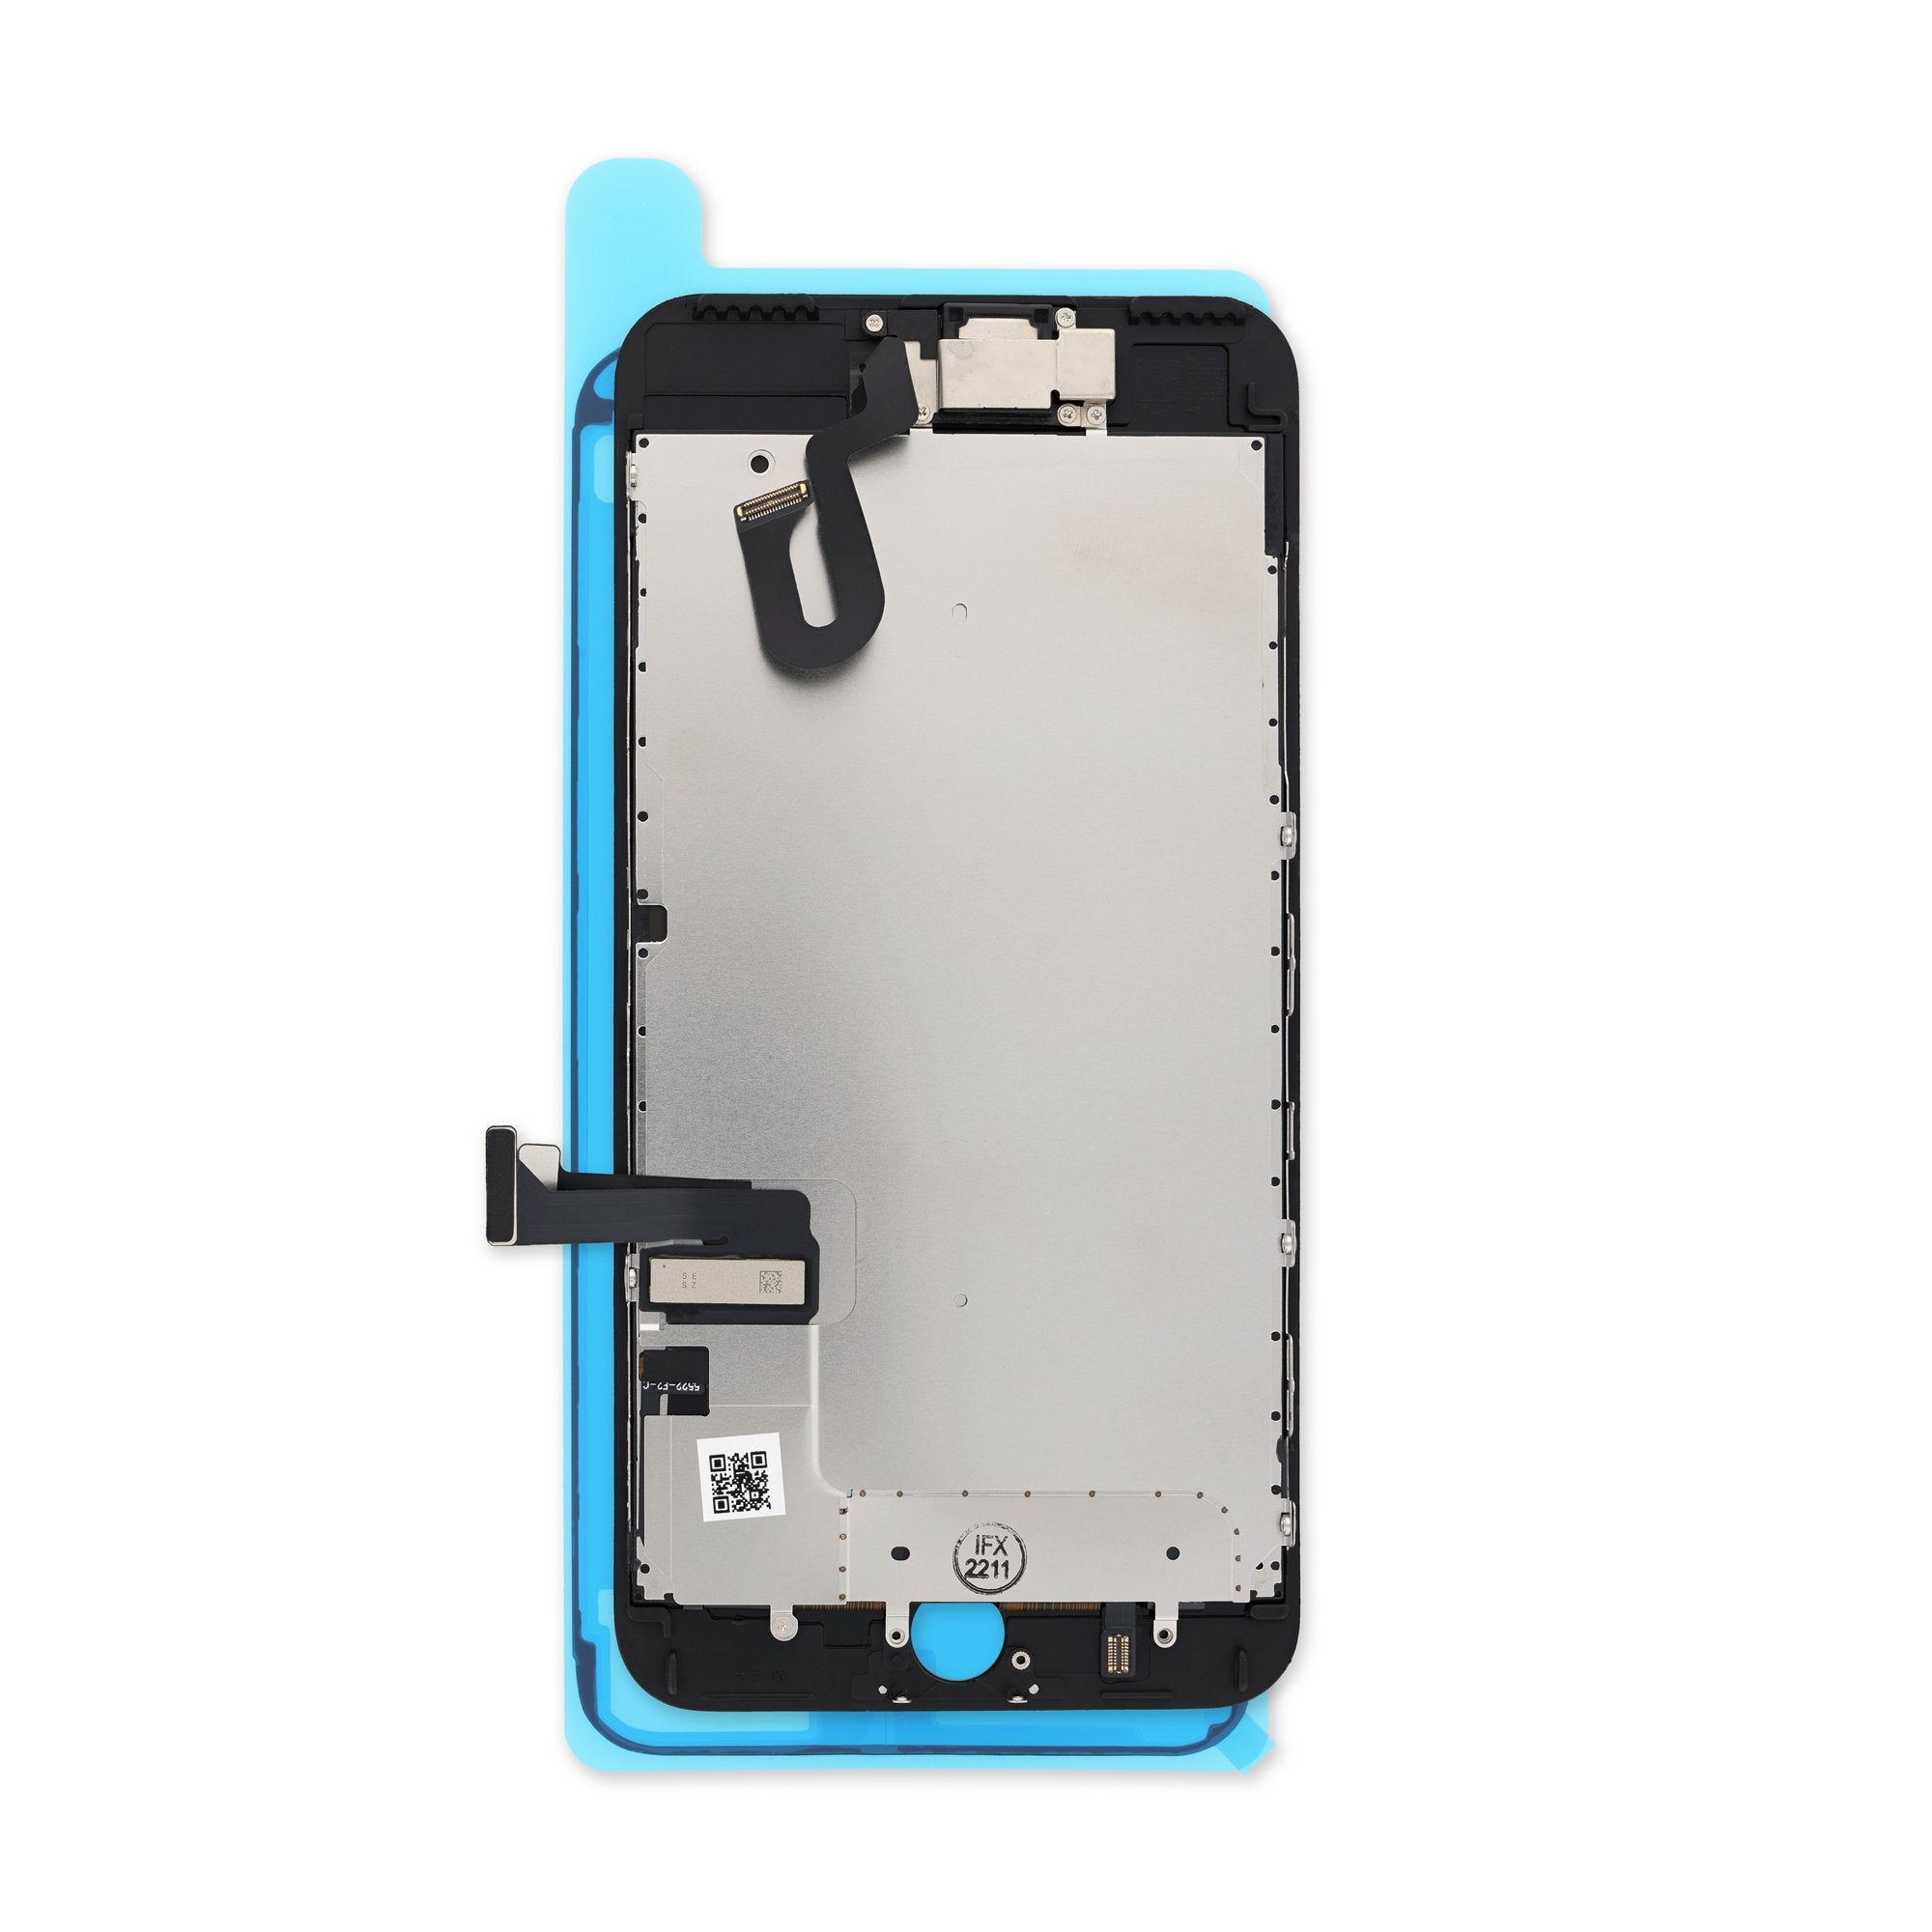 Display iPhone 7 Plus – UMX Refacciones